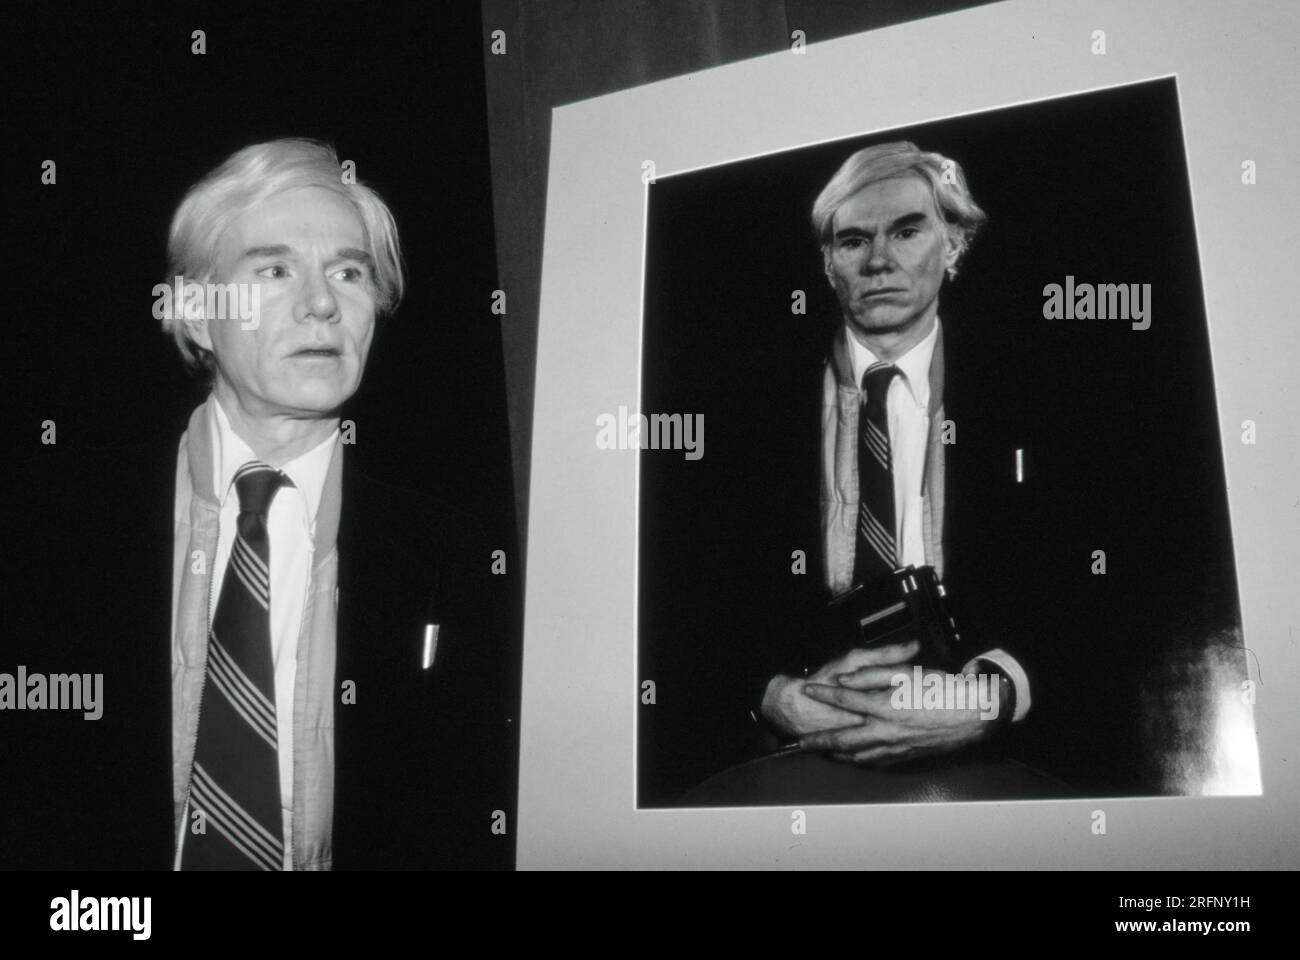 Popkünstler Andy Warhol mit einem 20 x 24 großen Polaroid-Porträt von sich selbst. Foto von Bernard Gotfryd Stockfoto